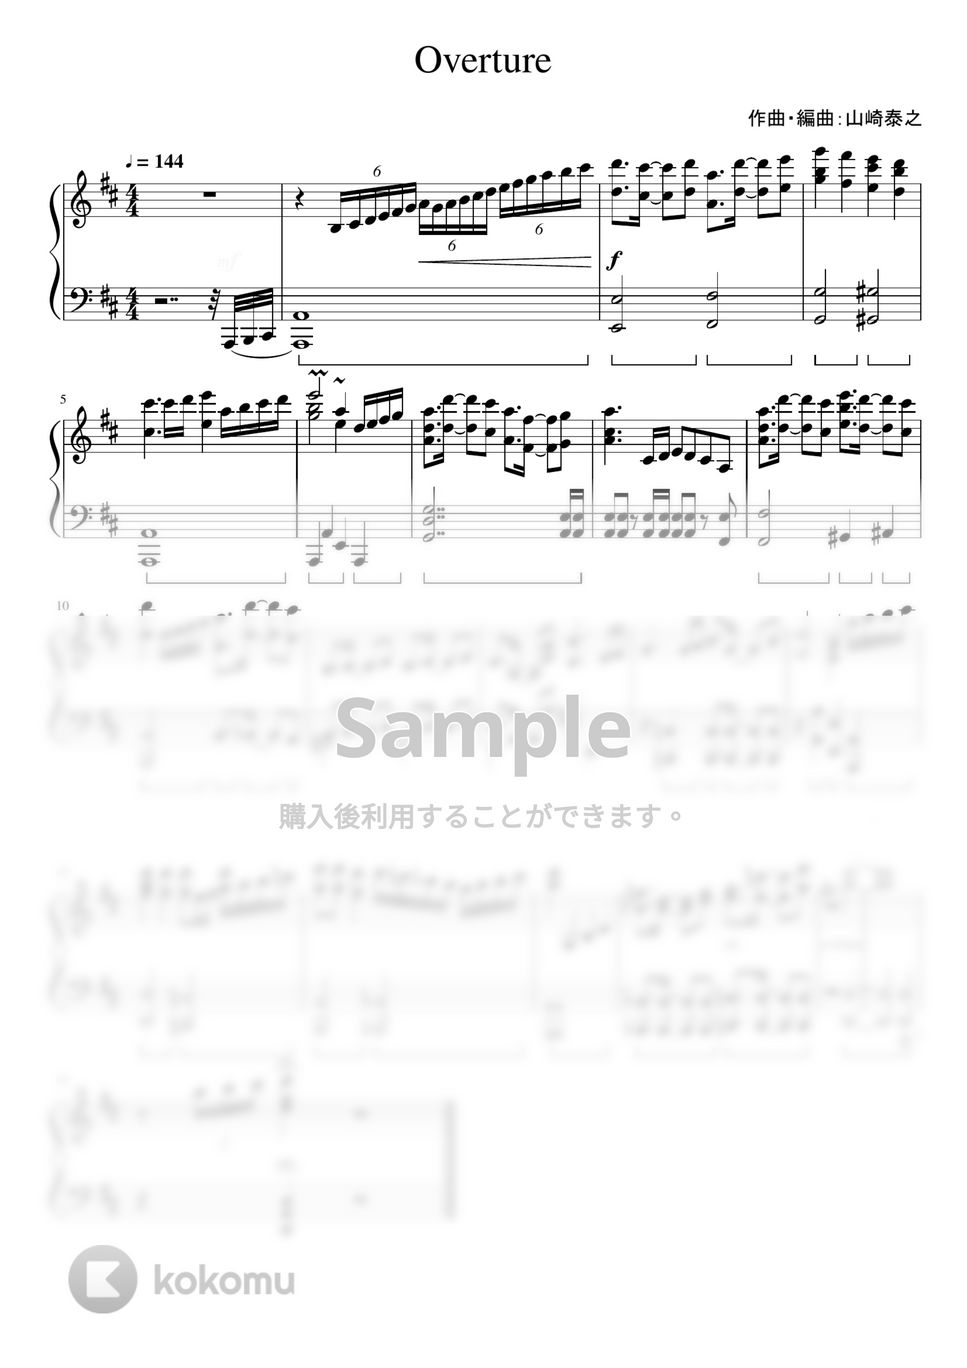 なにわ男子 - Overture (1stアルバム「1st Love」収録曲。) by ピアノぷりん